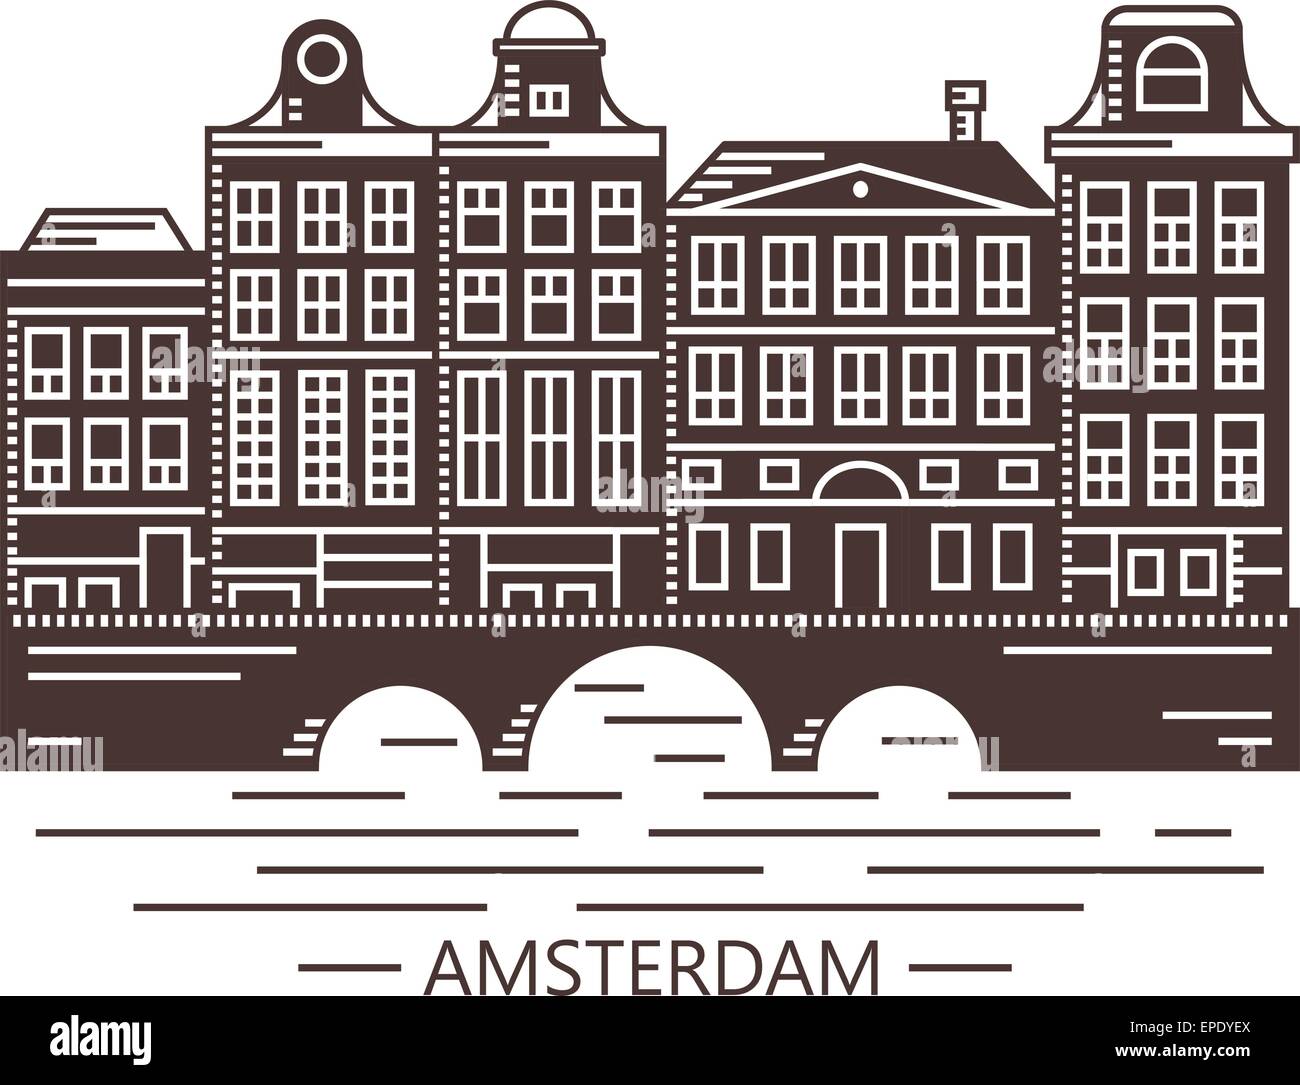 Old Amsterdam Holland Häuser auf Brücke braun Set Vektor-illustration Stock Vektor